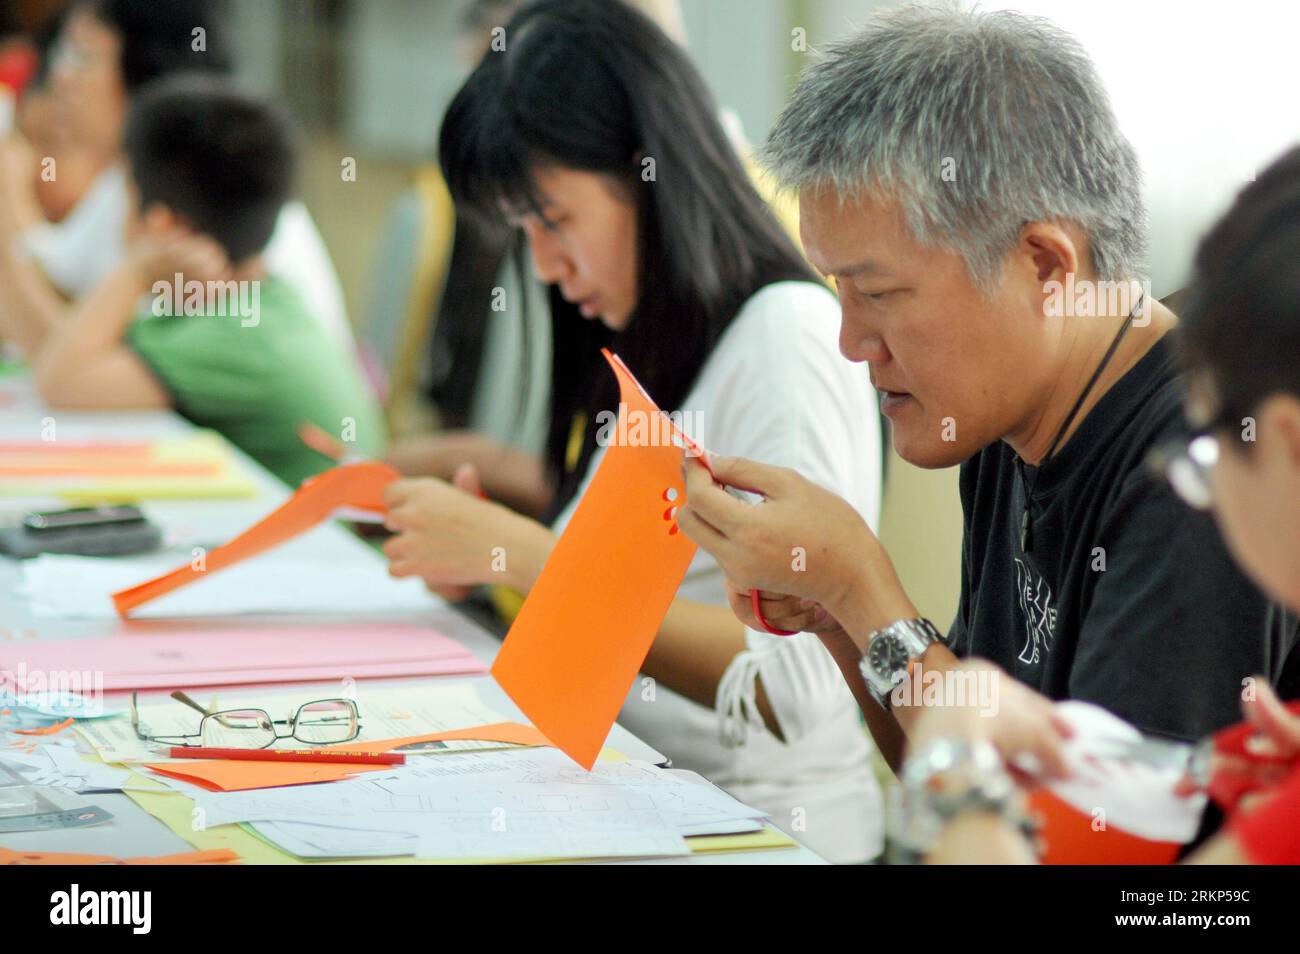 Bildnummer : 57896877 Datum : 15.04.2012 Copyright : imago/Xinhua (120415) -- KUALA LUMPUR, 15 avril 2012 (Xinhua) -- le chinois malaisien apprend un document coupé pendant le camp de formation sur la culture traditionnelle et l'art organisé par la Chambre de commerce chinoise malysienne à Kuala Lumpur, Malaisie, le 15 avril 2012. (Xinhua/Chong Voon Chung) (srb) MALAYSIA-KUALA LUMPUR-PAPER CUT PUBLICATIONxNOTxINxCHN Gesellschaft Kultur Kunsthandwerk Papierschnitt Scherenschnitt xbs x0x 2012 quer 57896877 Date 15 04 2012 Copyright Imago XINHUA Kuala Lumpur avril 15 2012 XINHUA Malaysian Chinese apprendre papier coupé pendant la tr Banque D'Images